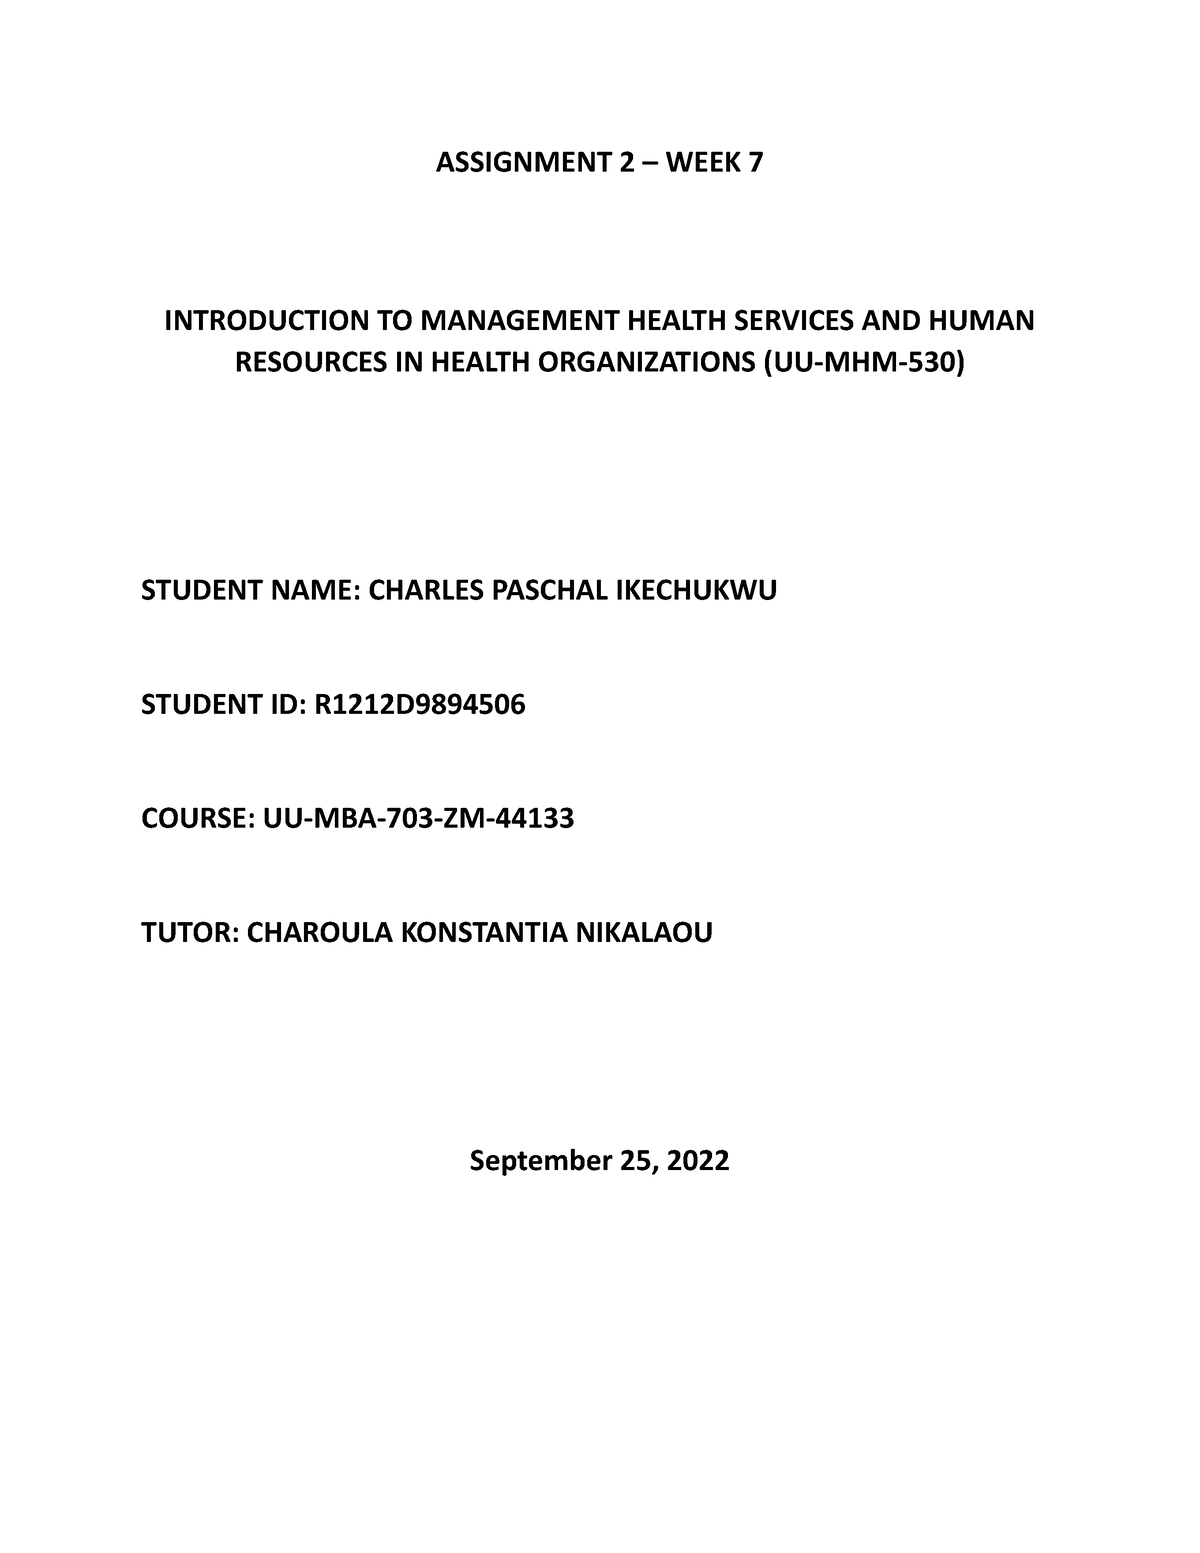 unicaf dissertation pdf